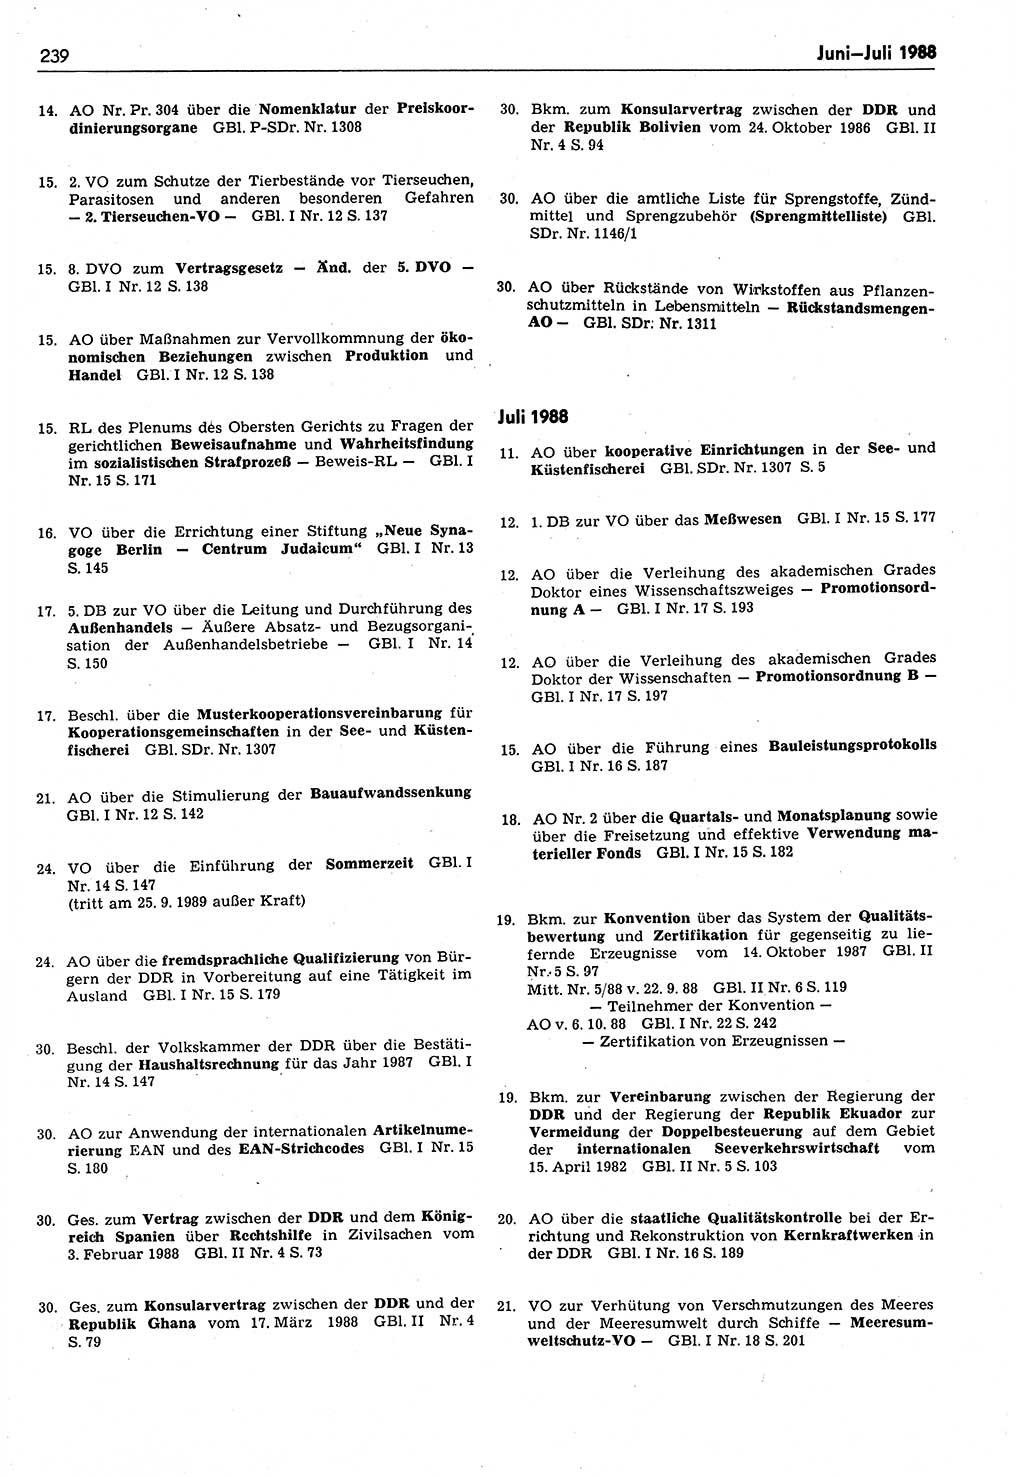 Das geltende Recht der Deutschen Demokratischen Republik (DDR) 1949-1988, Seite 239 (Gelt. R. DDR 1949-1988, S. 239)